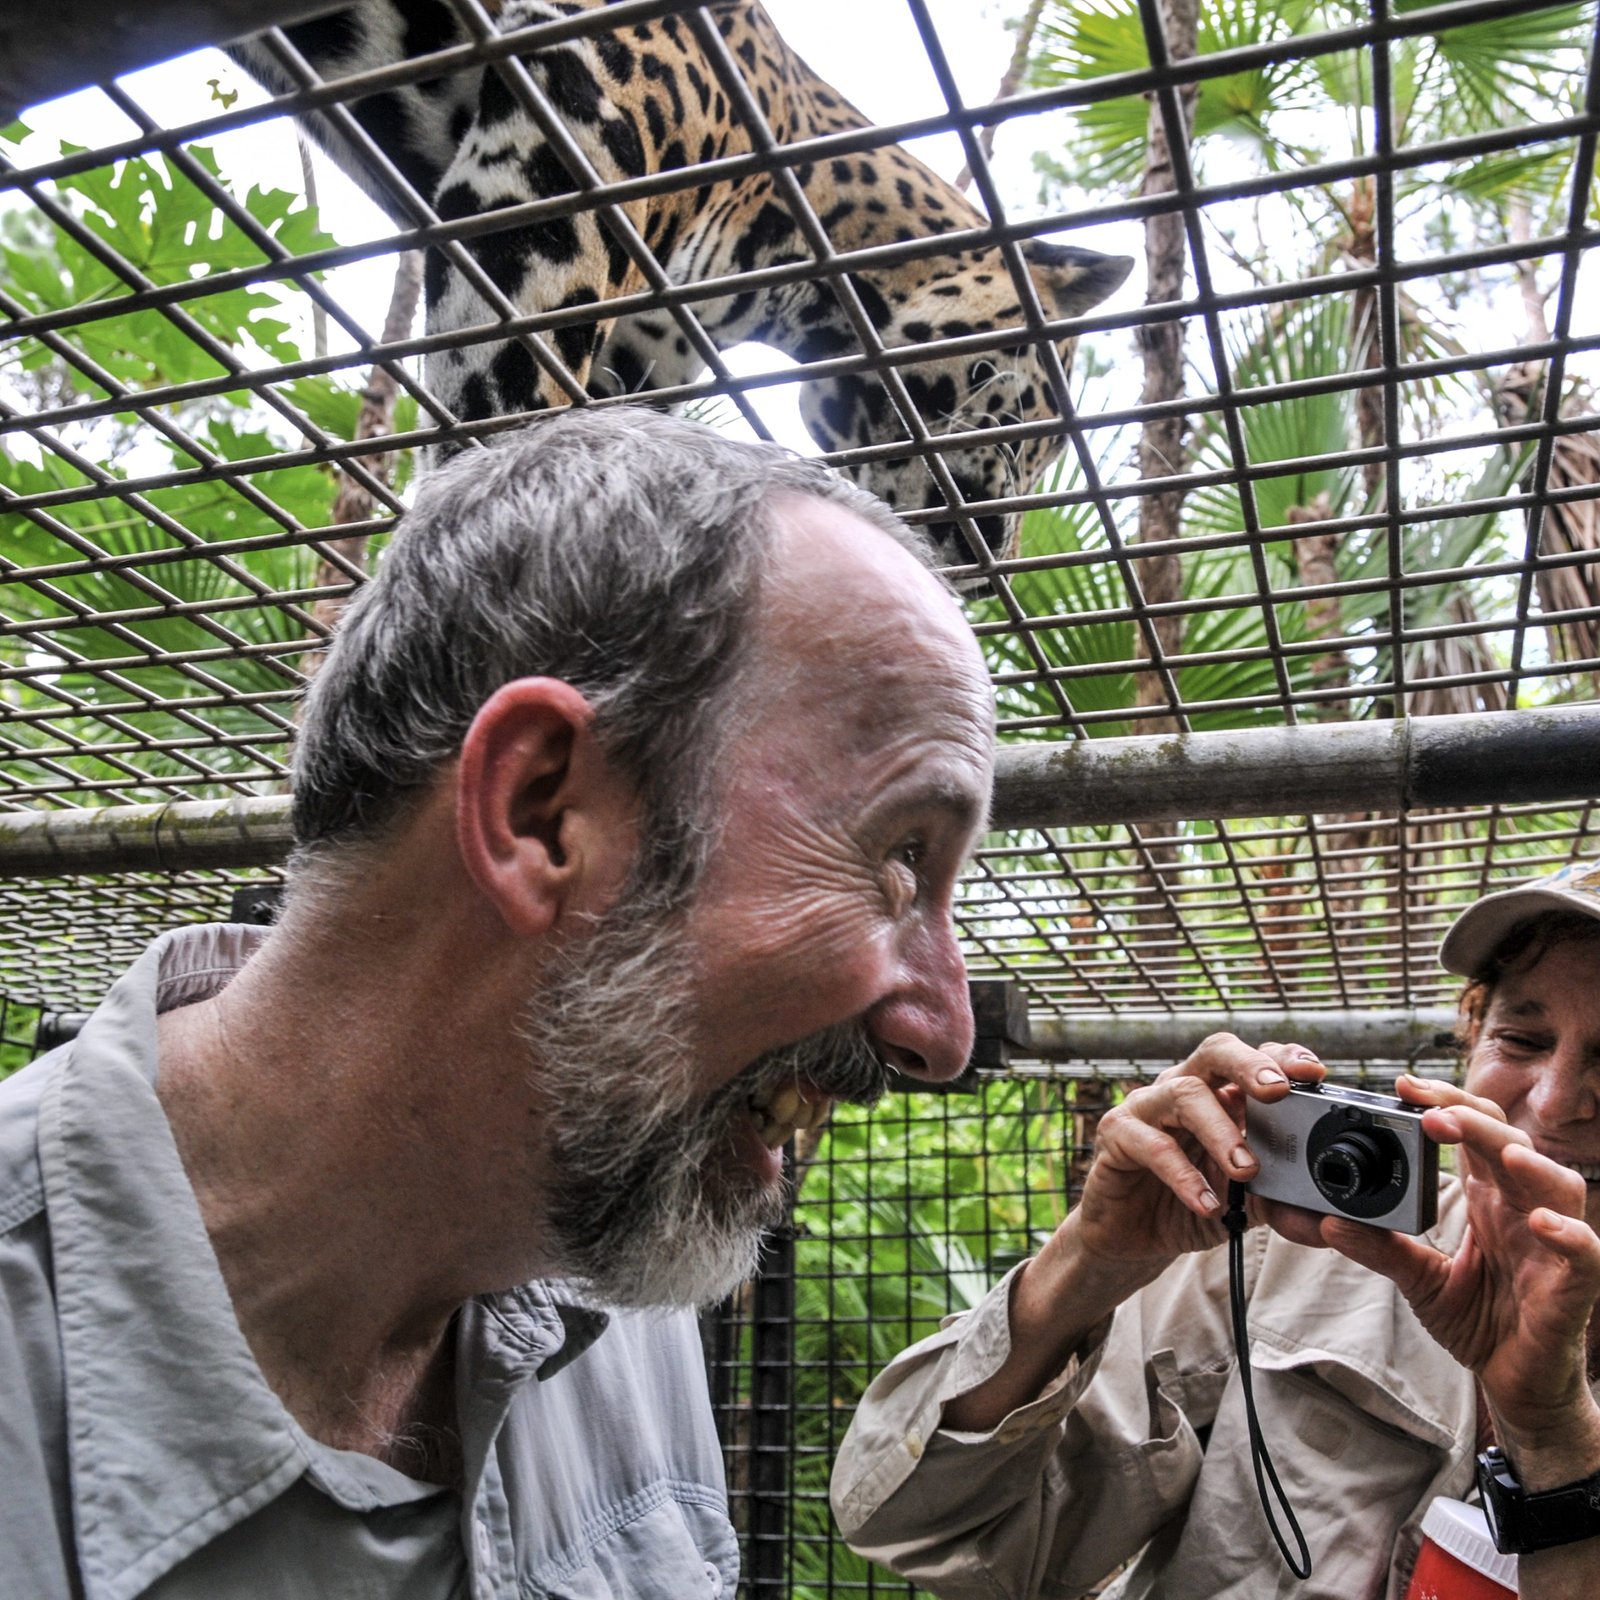 The Belize Zoo Jaguar Encounter